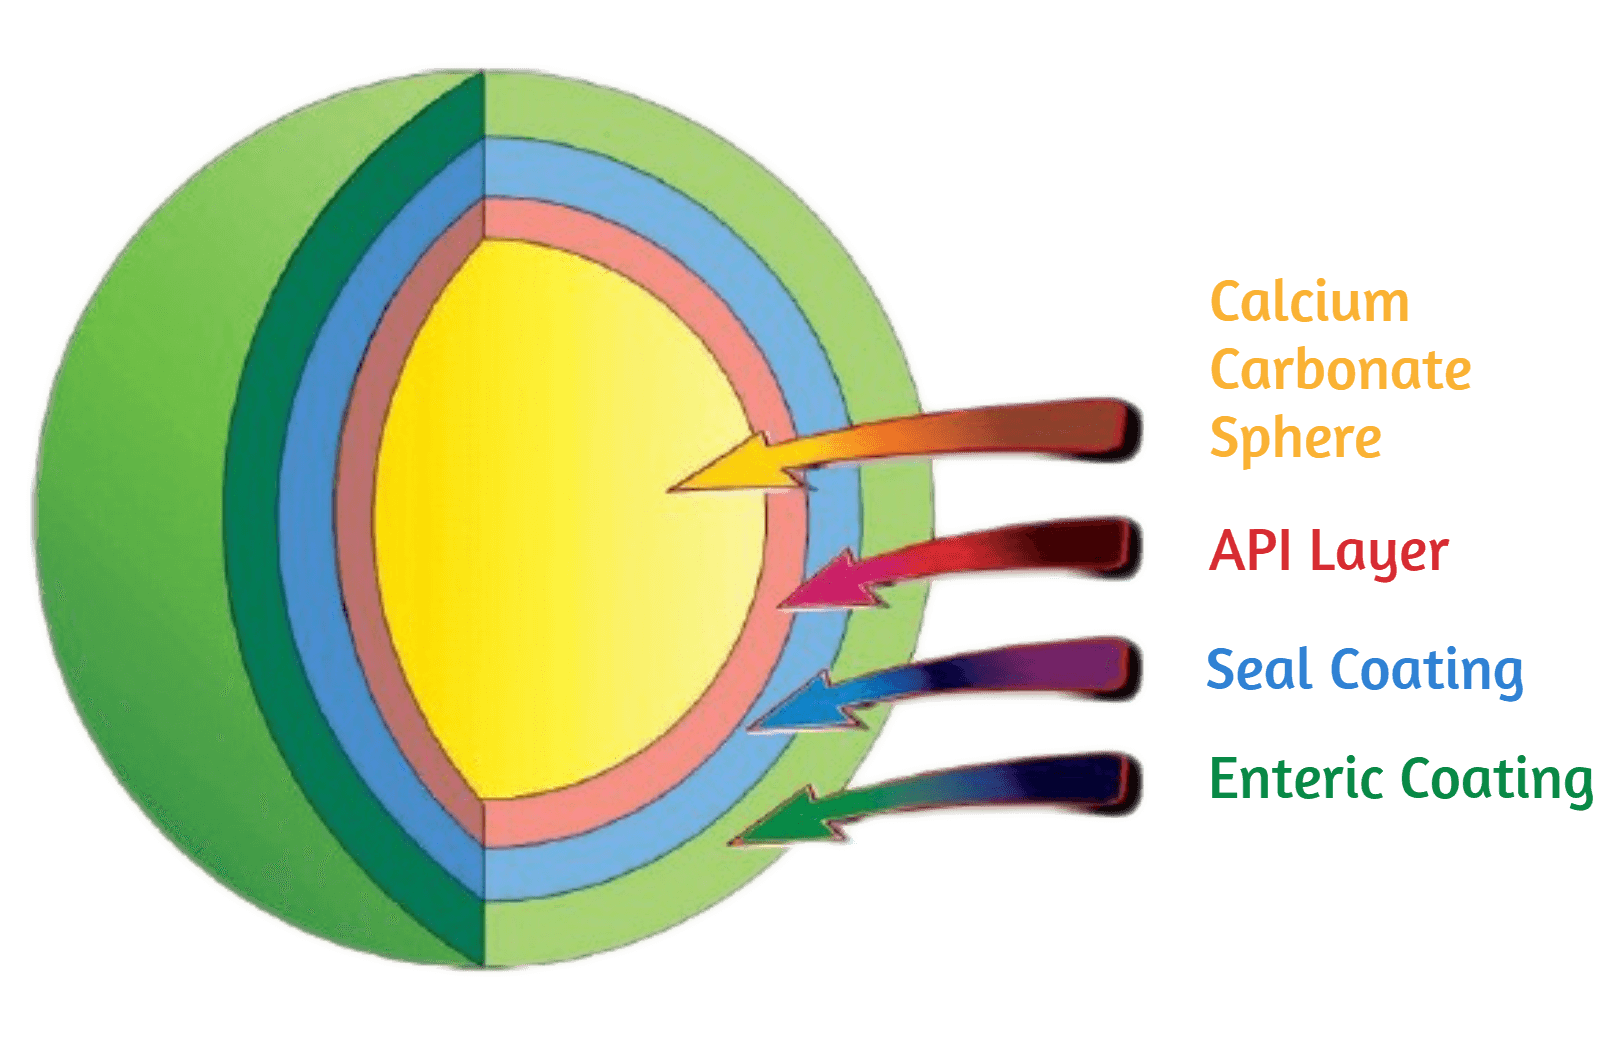 Calcium Carbonate Sphere